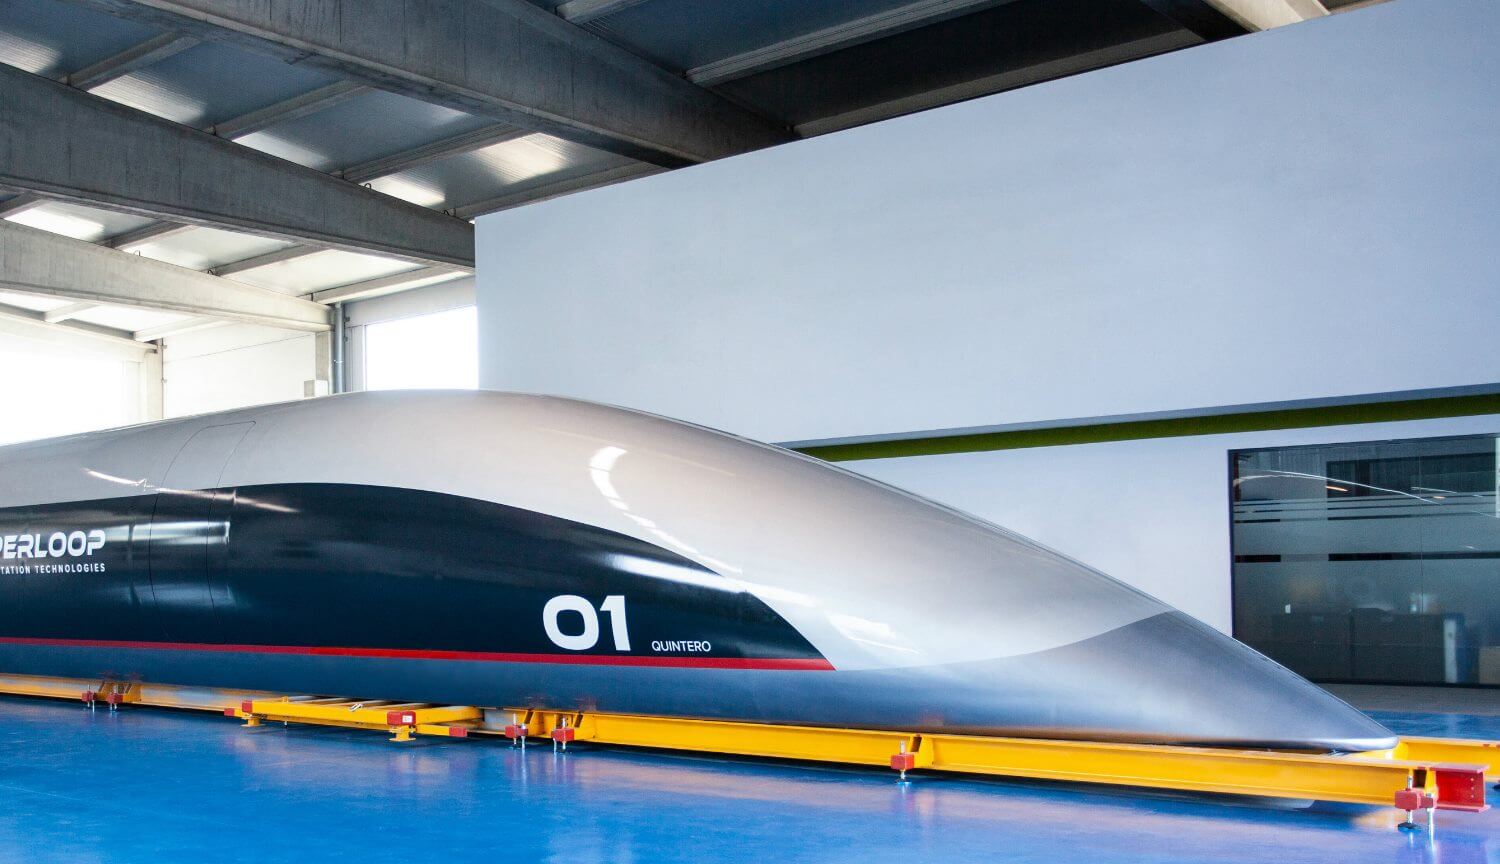 Passageiros cápsula Hyperloop estabeleceu um novo recorde de velocidade